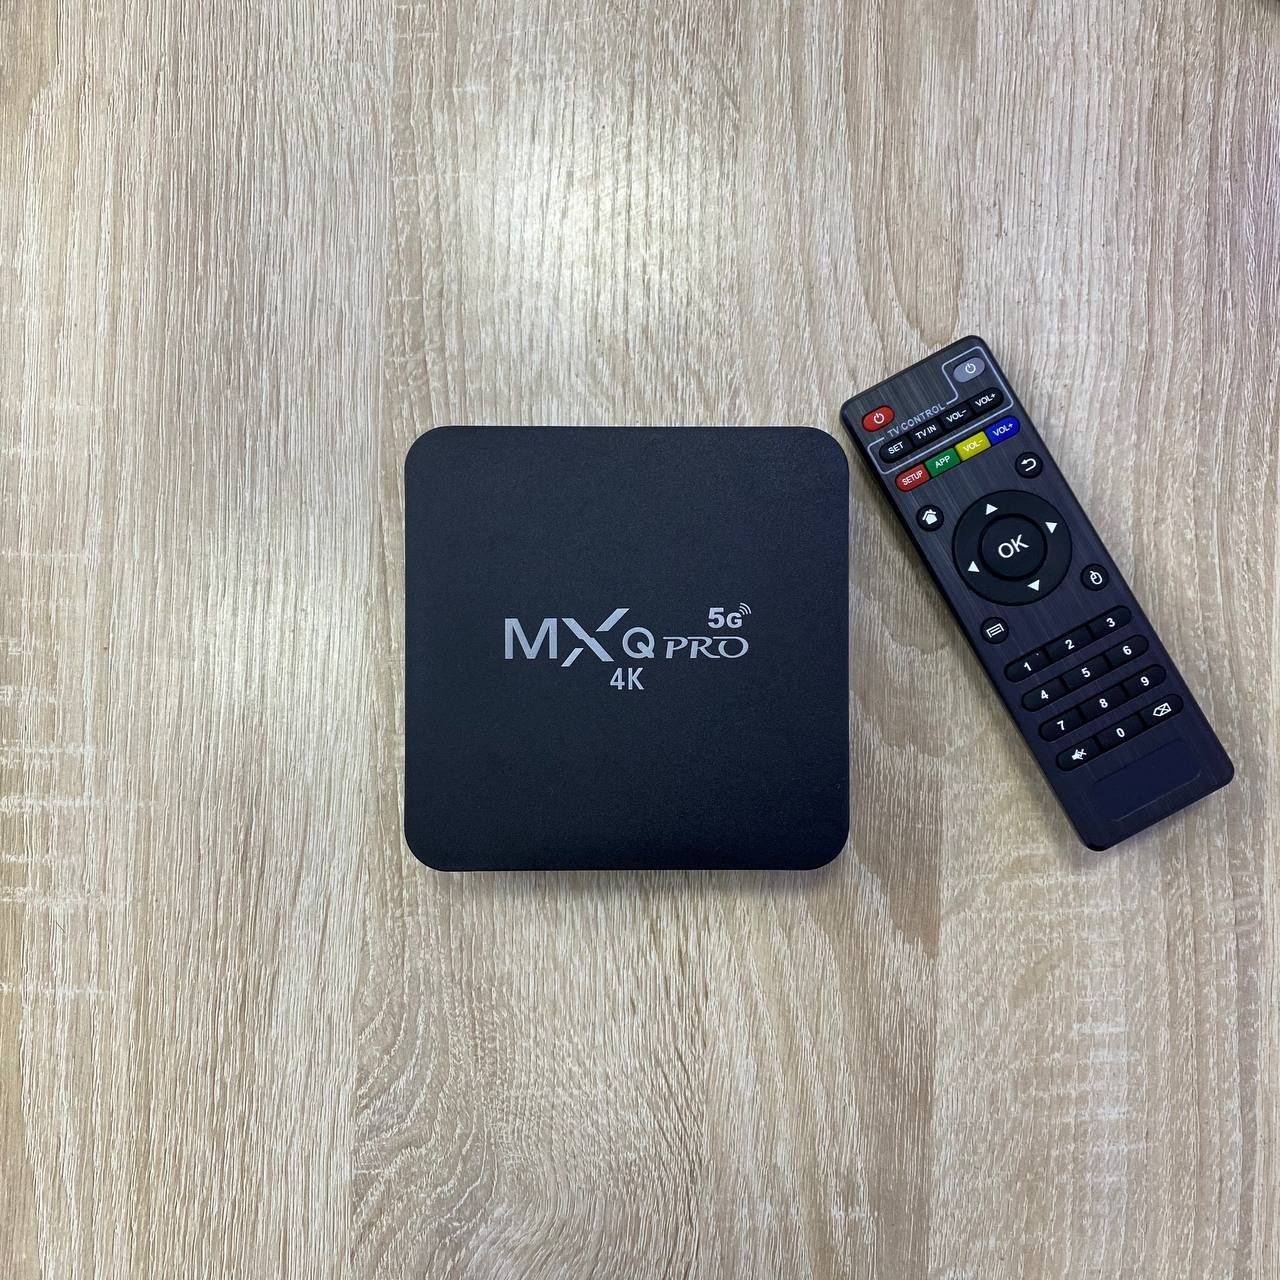 Актия! MXQ 4K PRO, твбокс приставка на любой телевизор!Smart tvbox